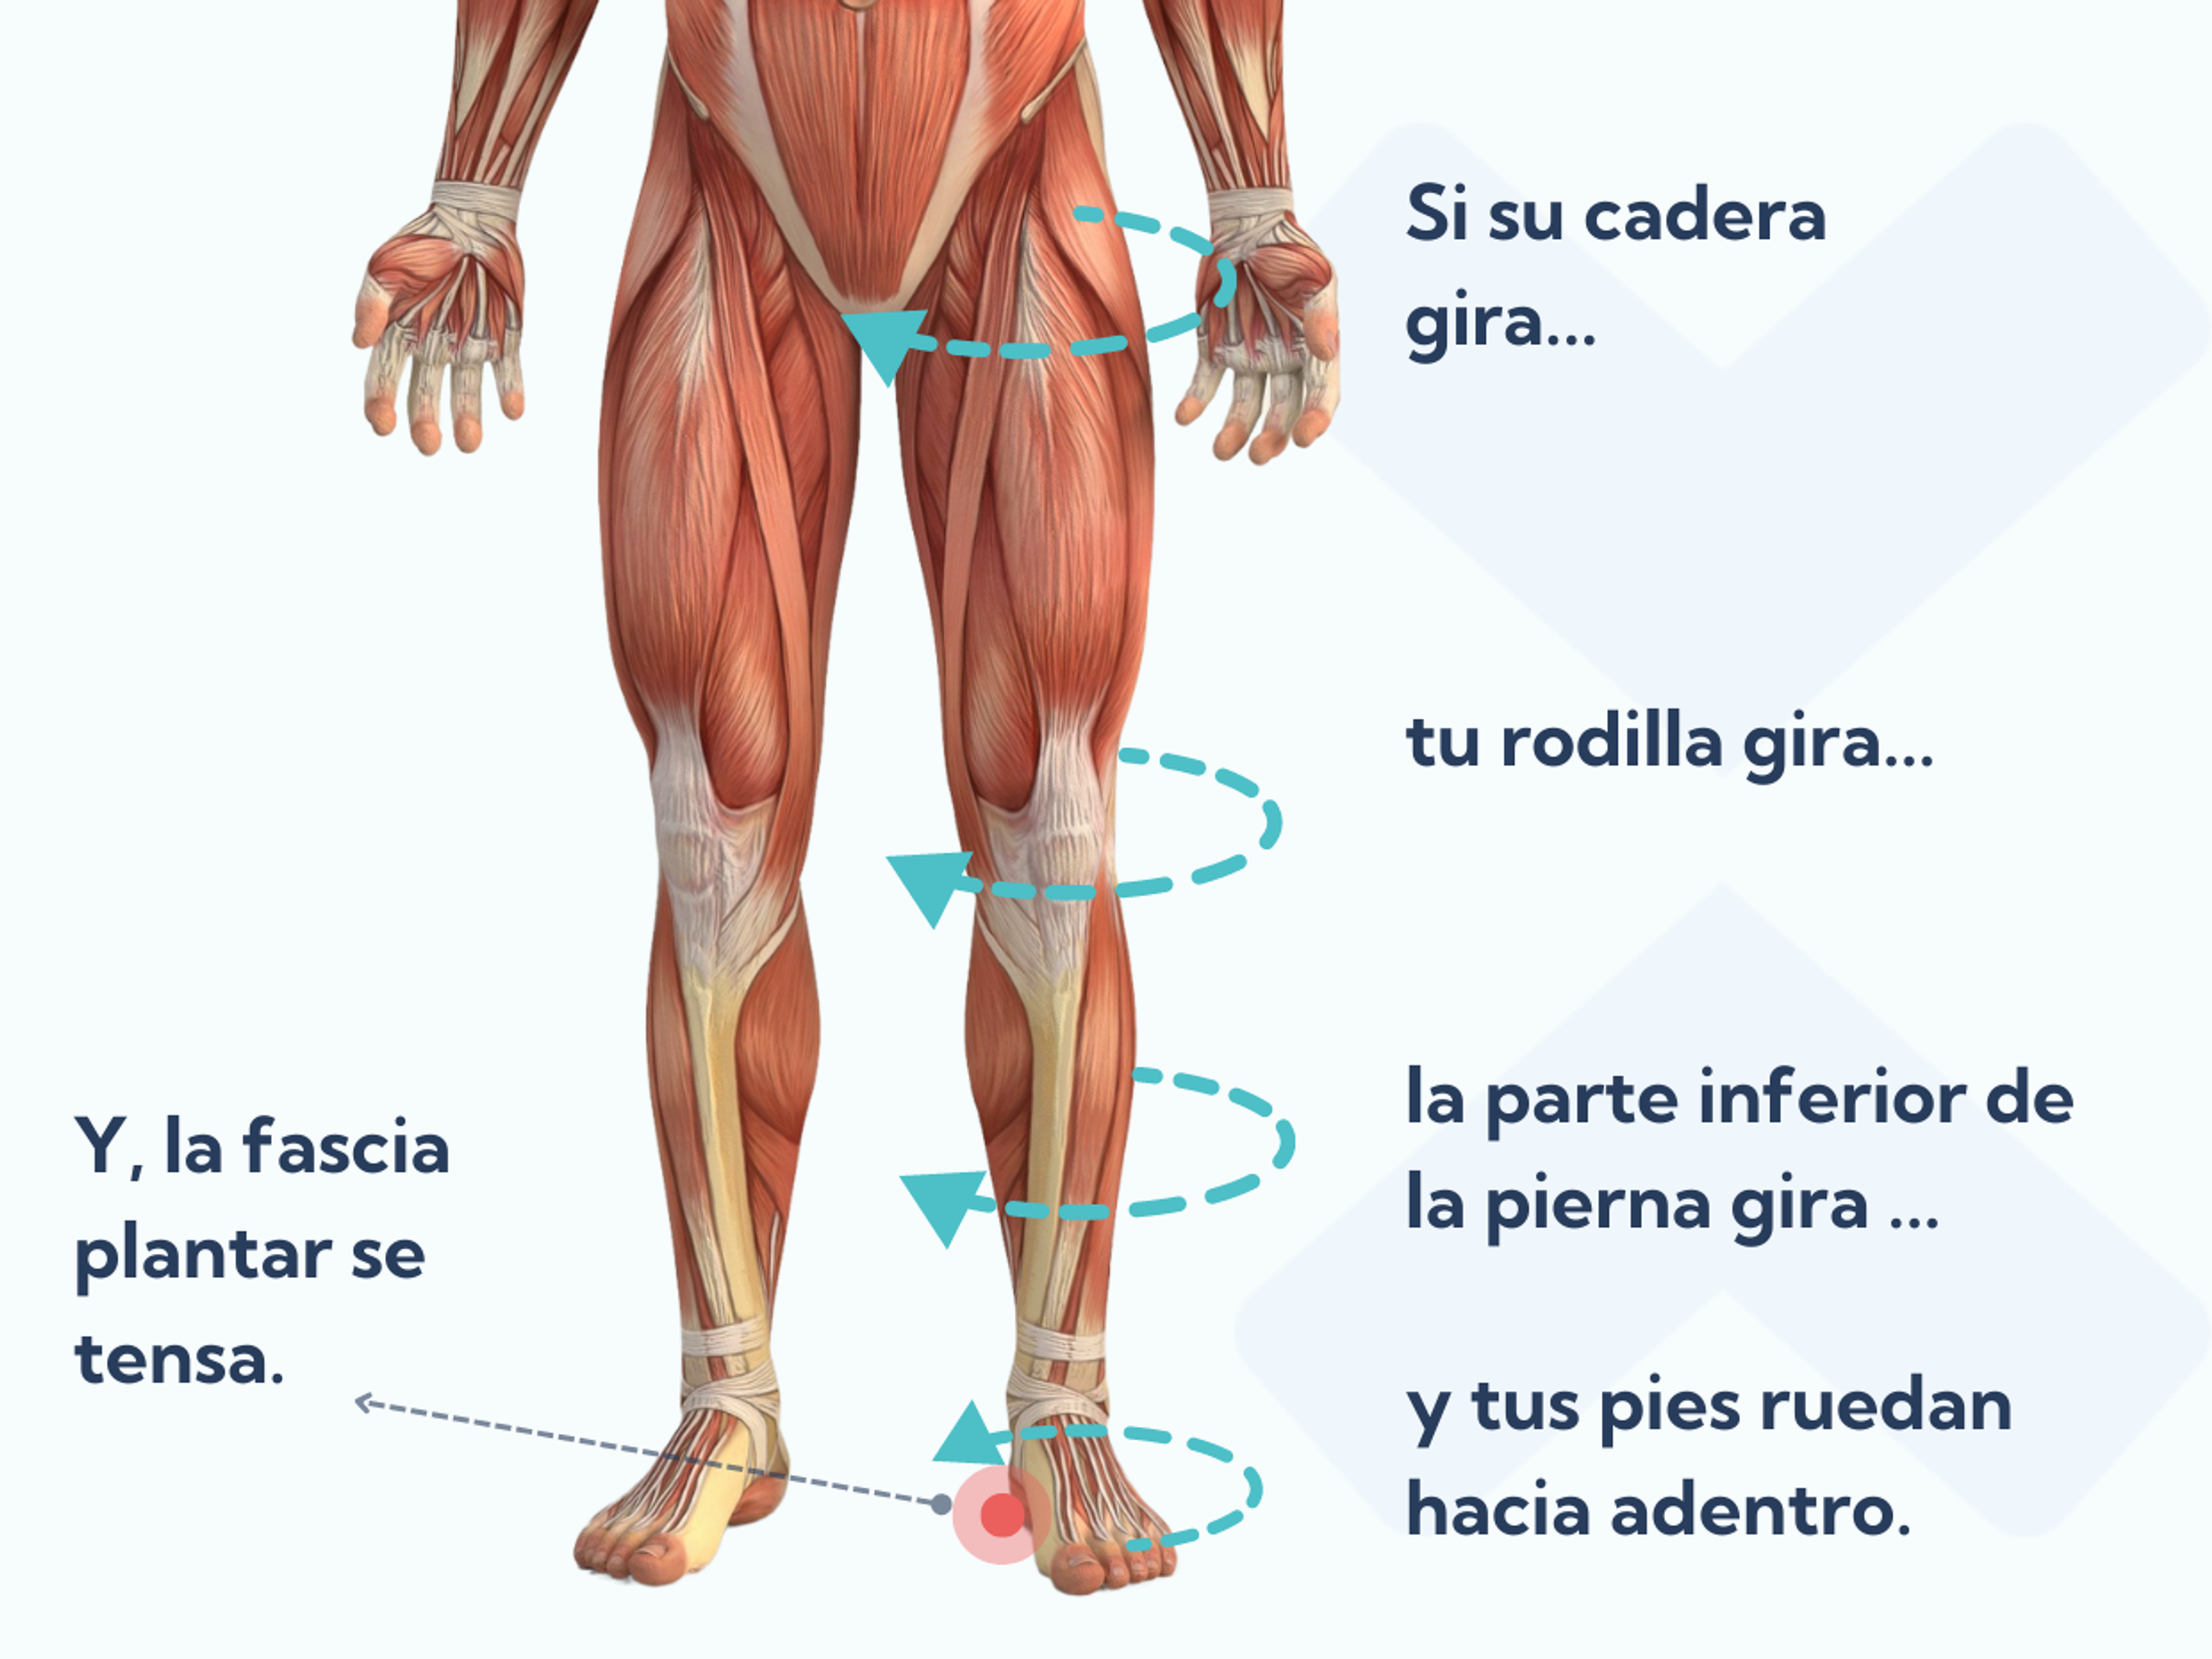 Cómo puede la alineación del cuerpo y el control de las caderas ayudar a tratar la fascitis plantar?